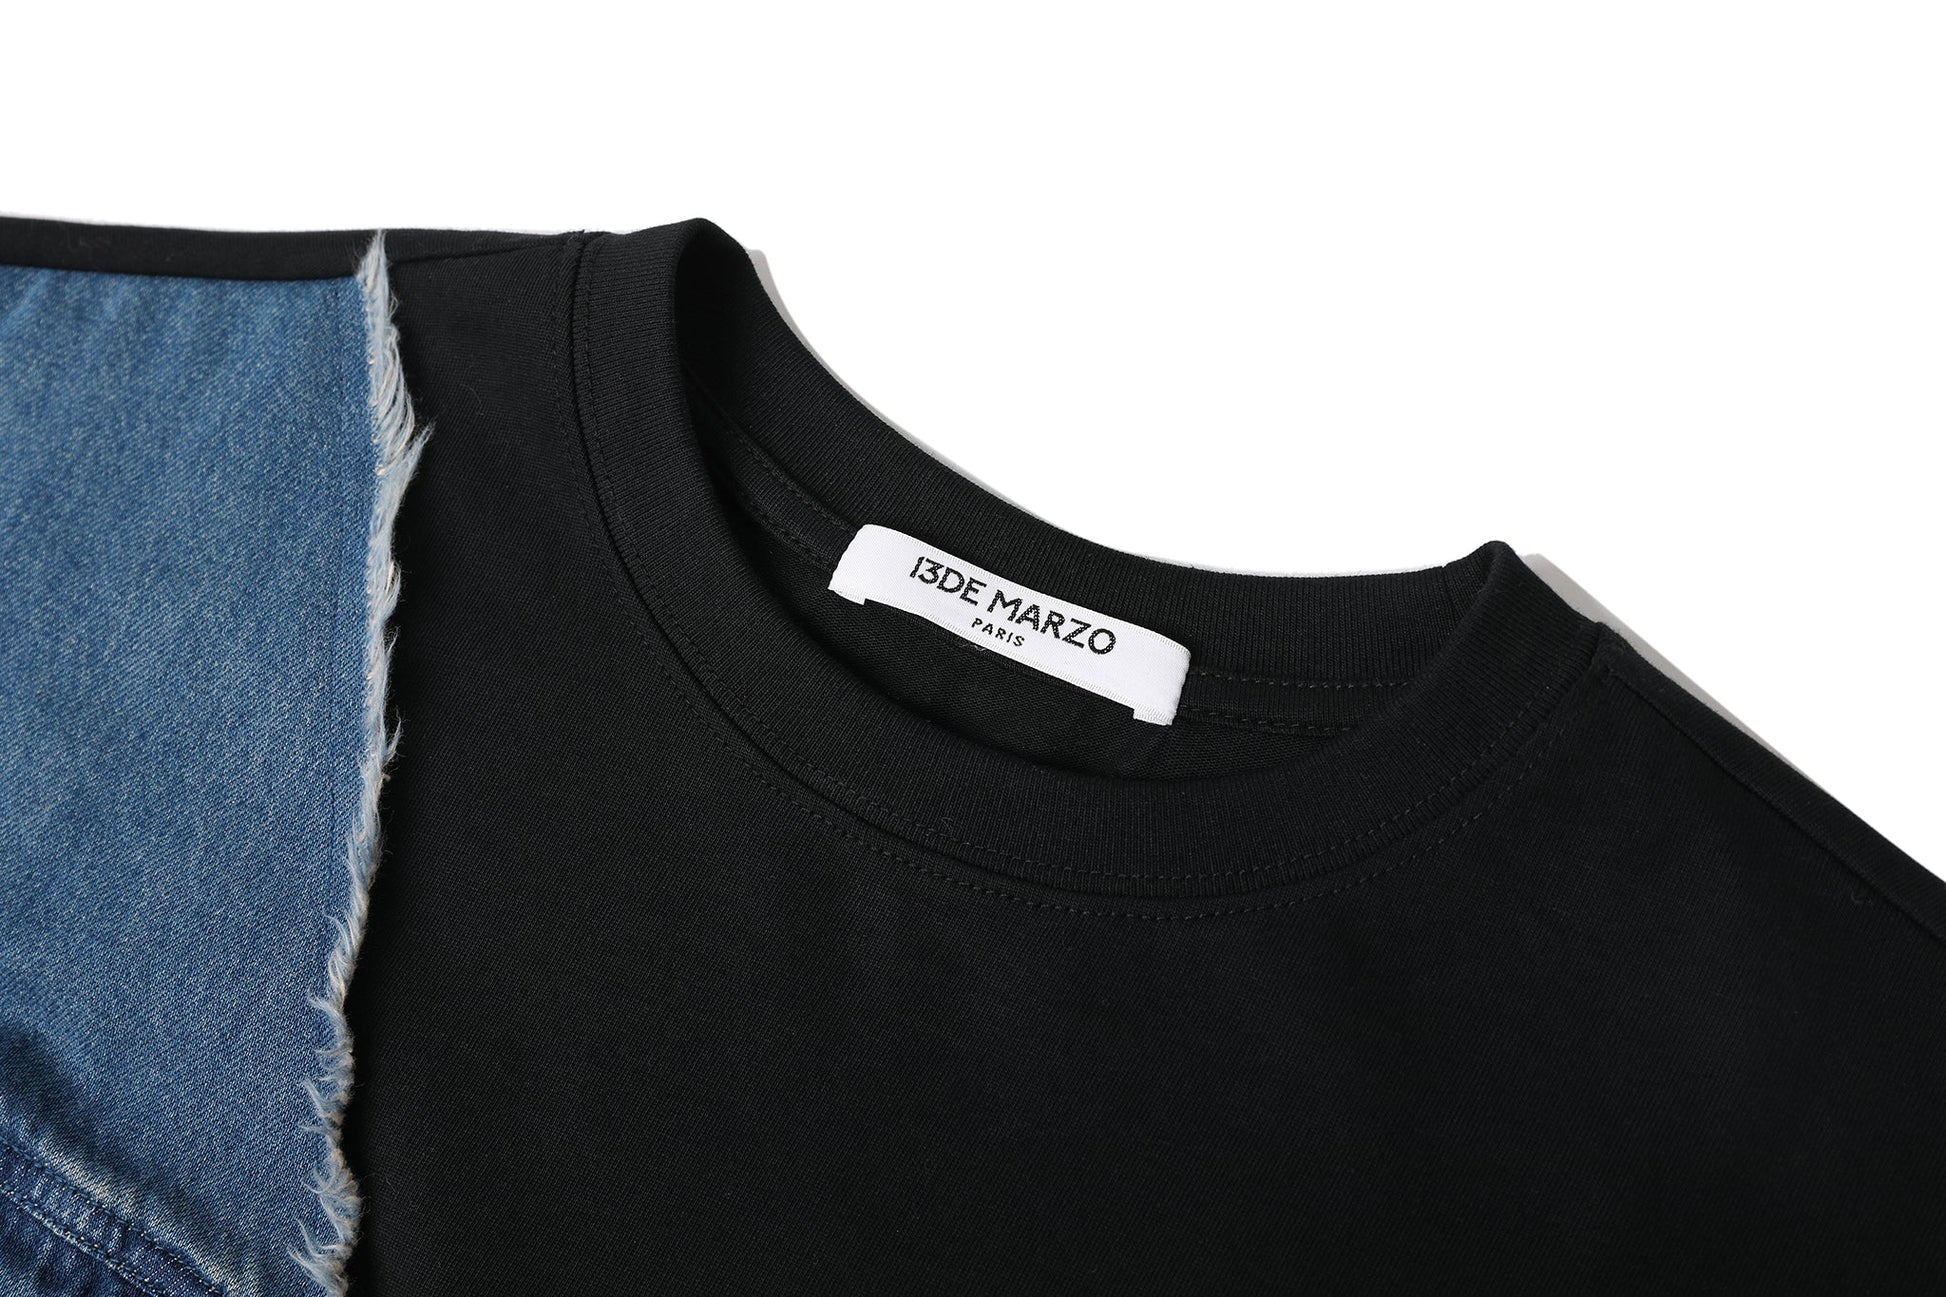 13DE MARZO Bear Bag Functional T-shirt Tuffet – Fixxshop